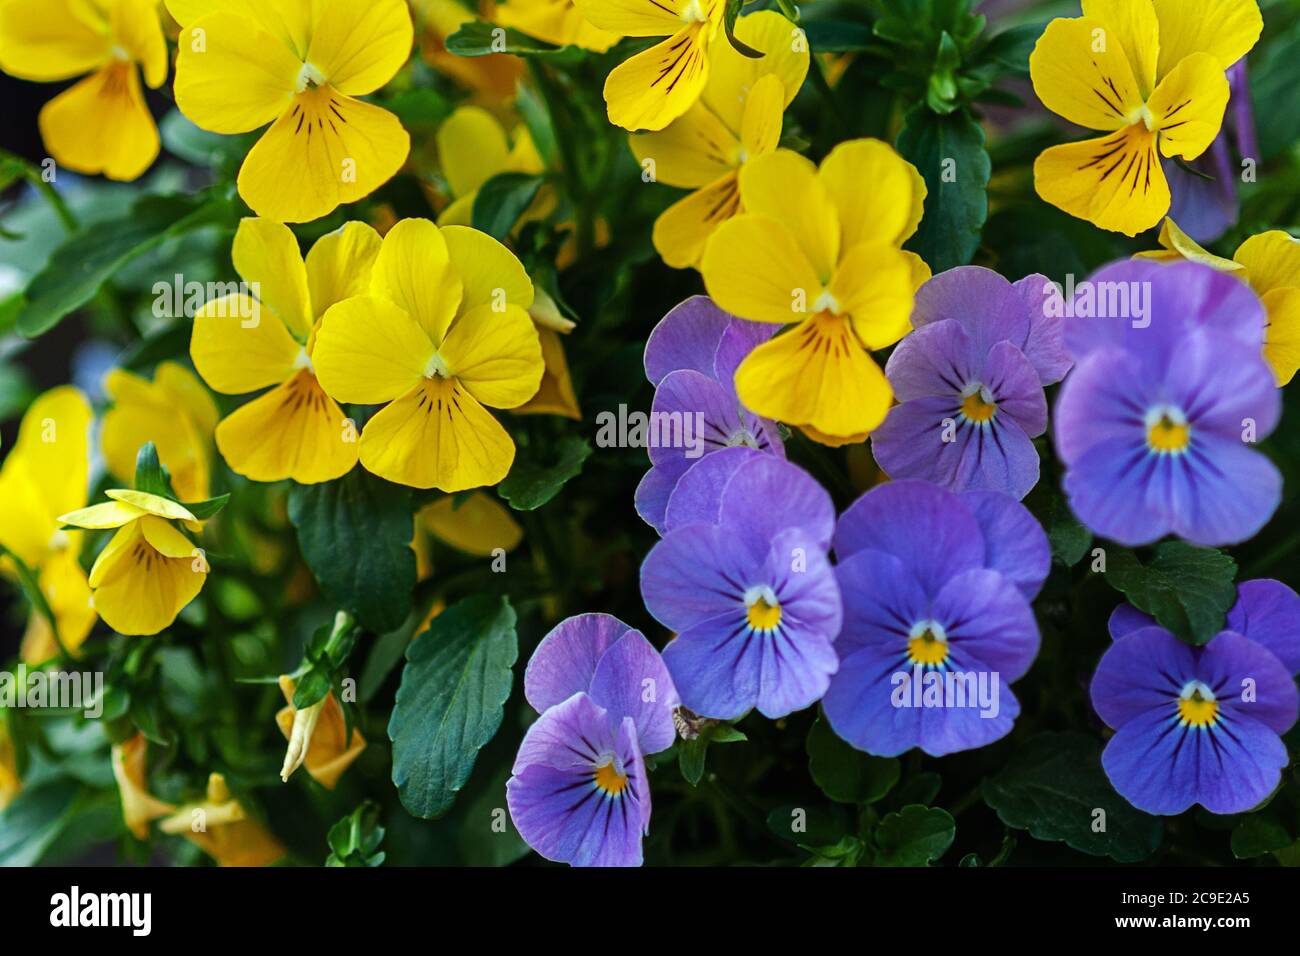 les fleurs de pansy jaune vif et violet se rapprochent Banque D'Images